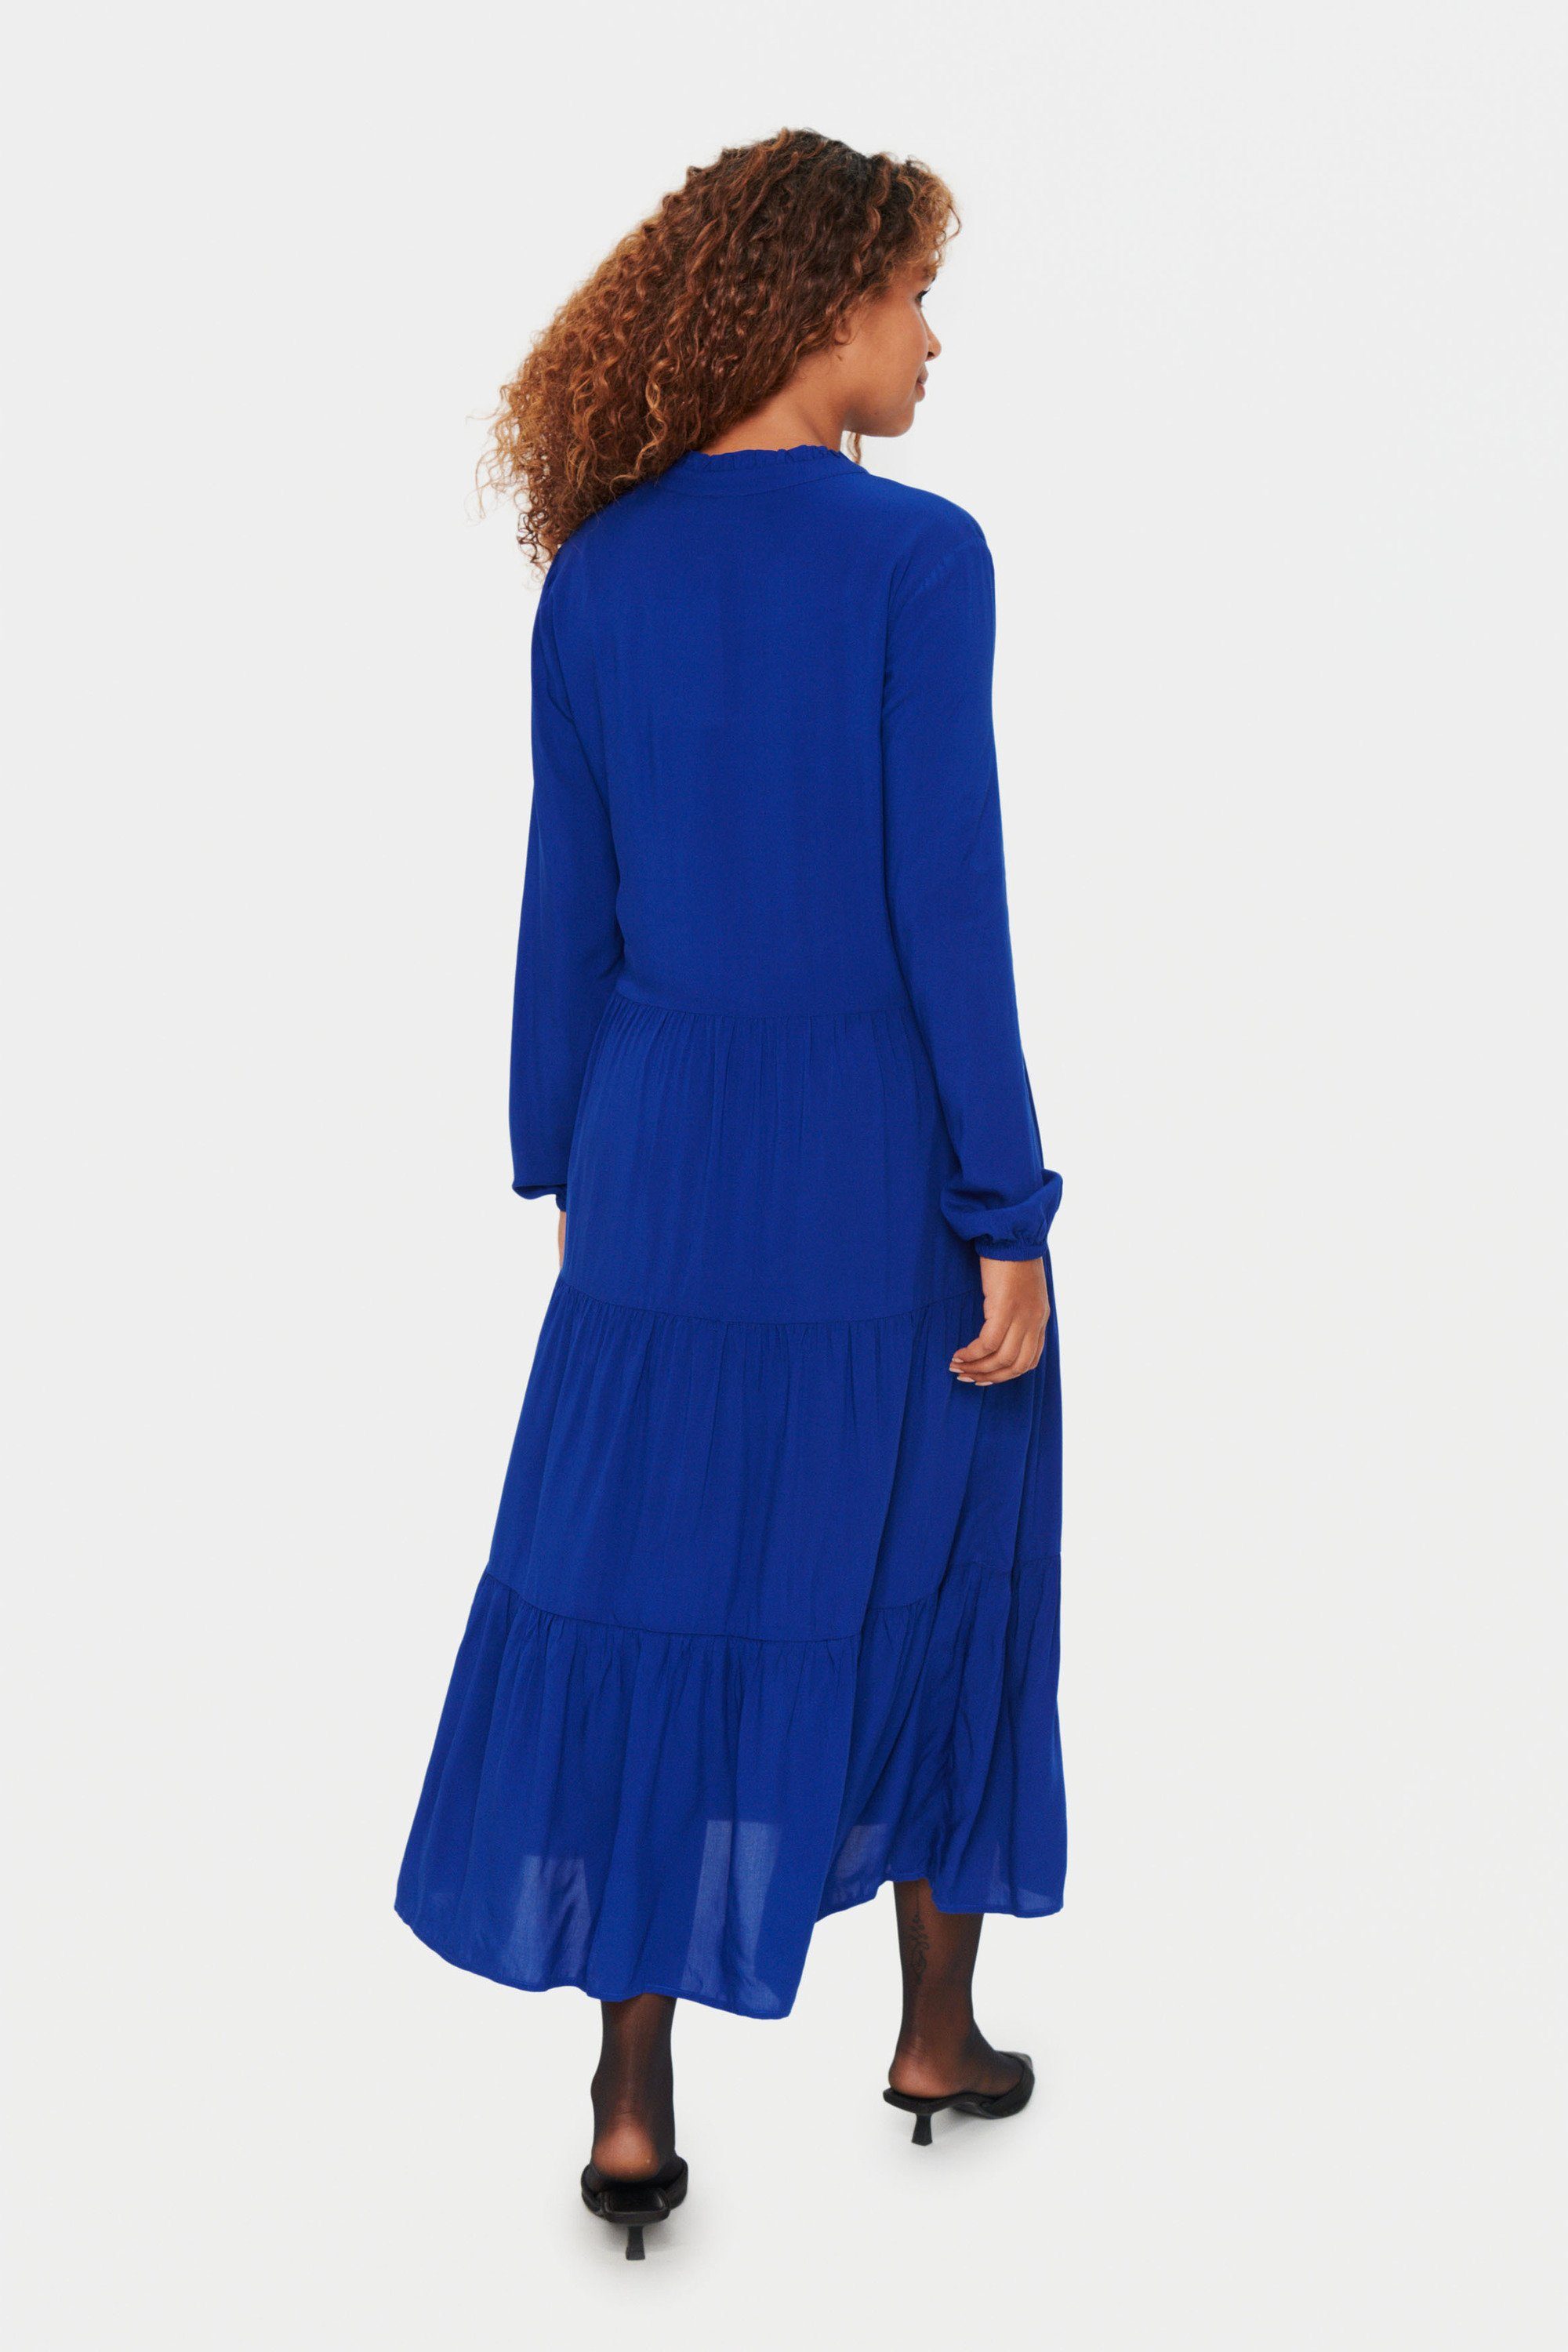 Saint Tropez Jerseykleid Kleid EdaSZ Sodalite Blue